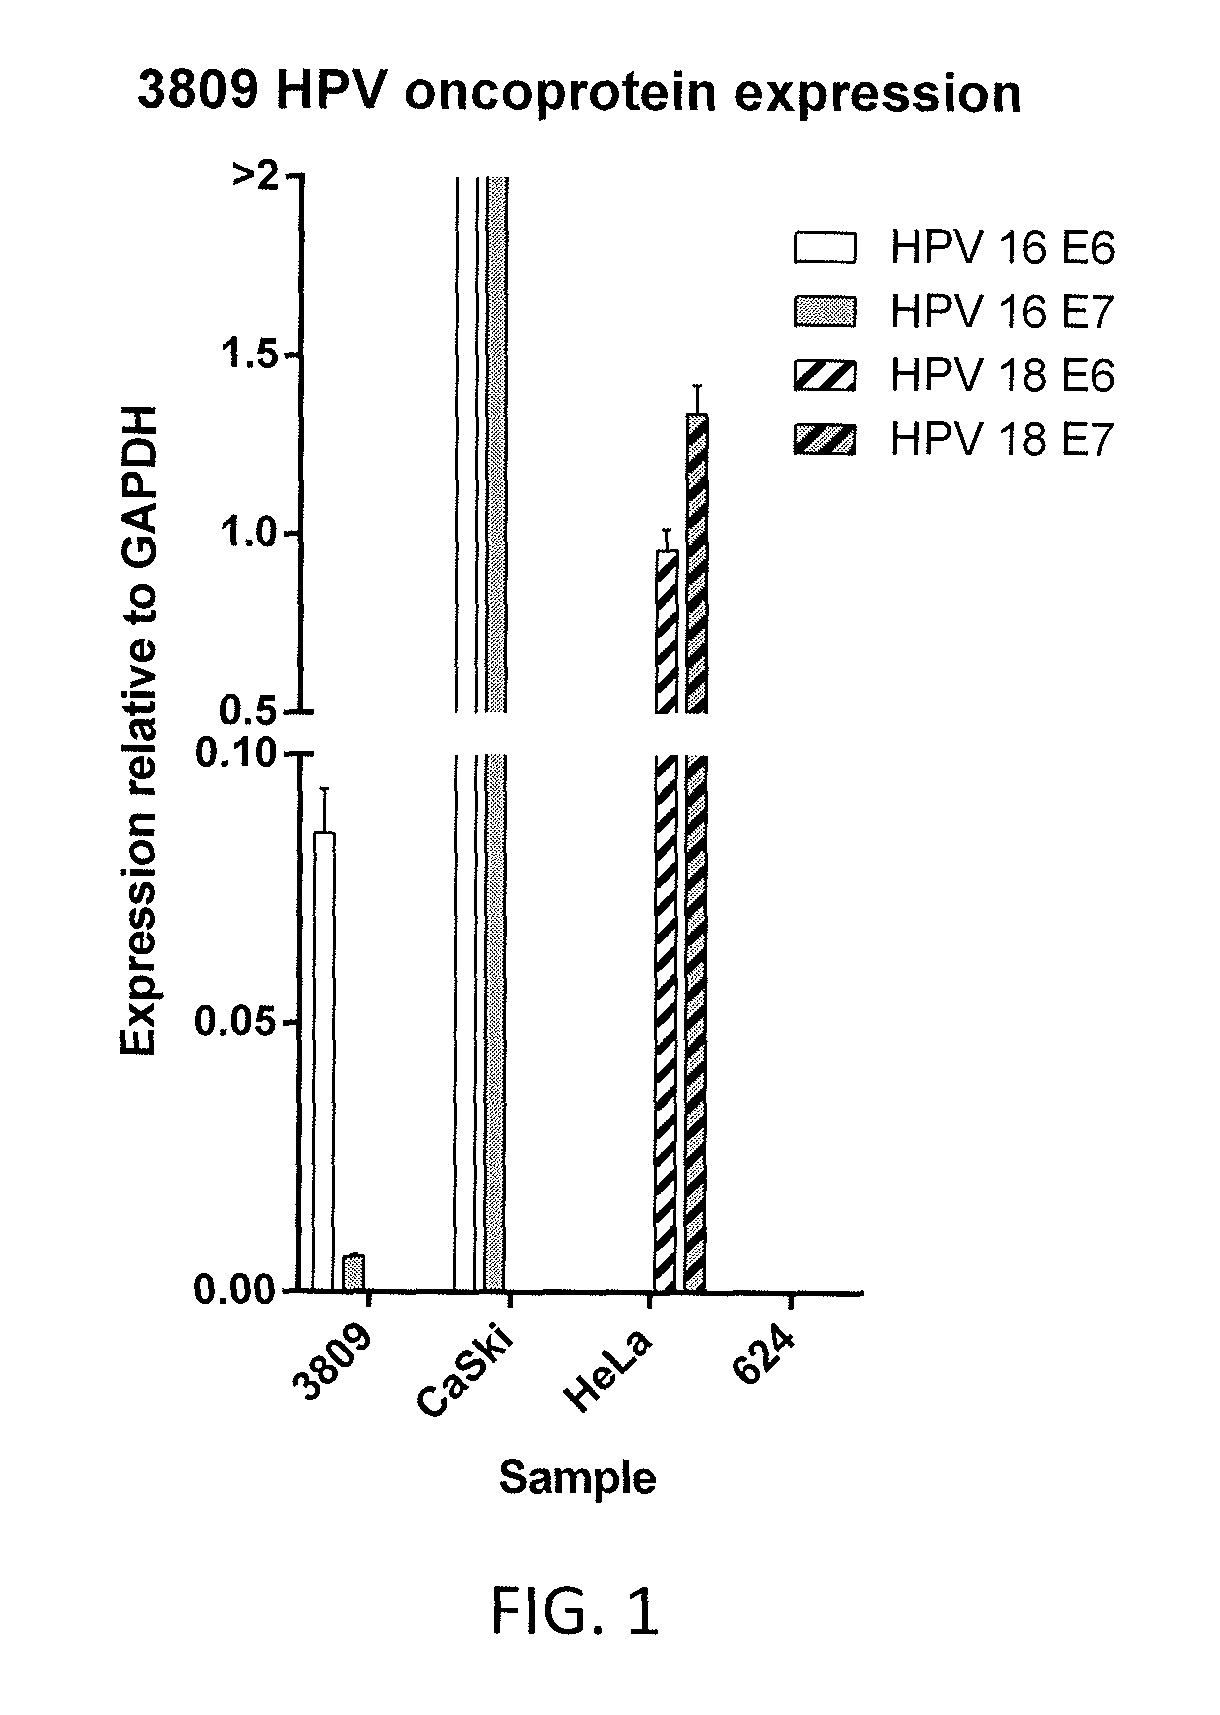 Anti-human papillomavirus 16 E6 T cell receptors